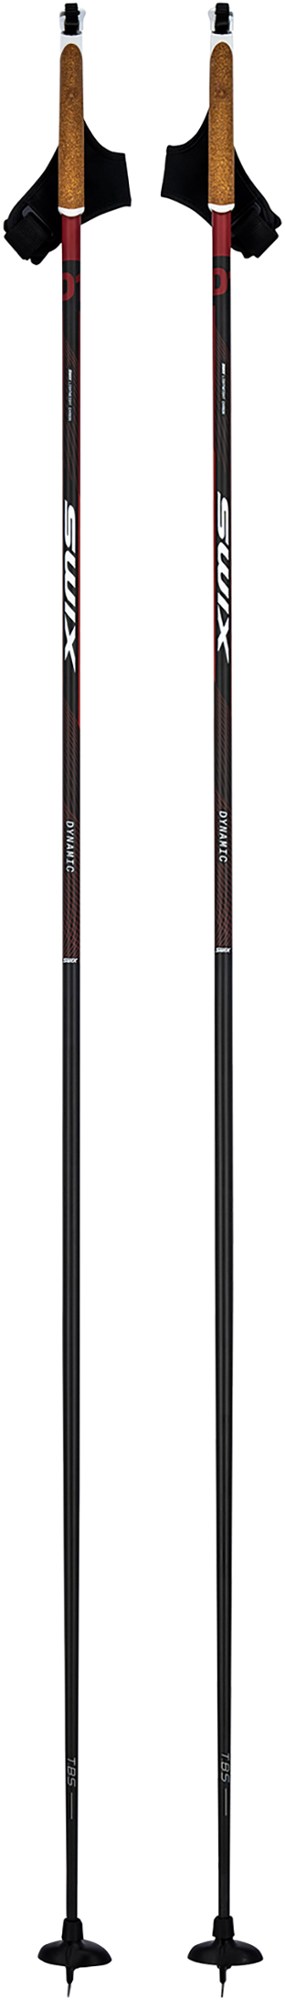 Палки для беговых лыж Dynamic D1 Swix, черный